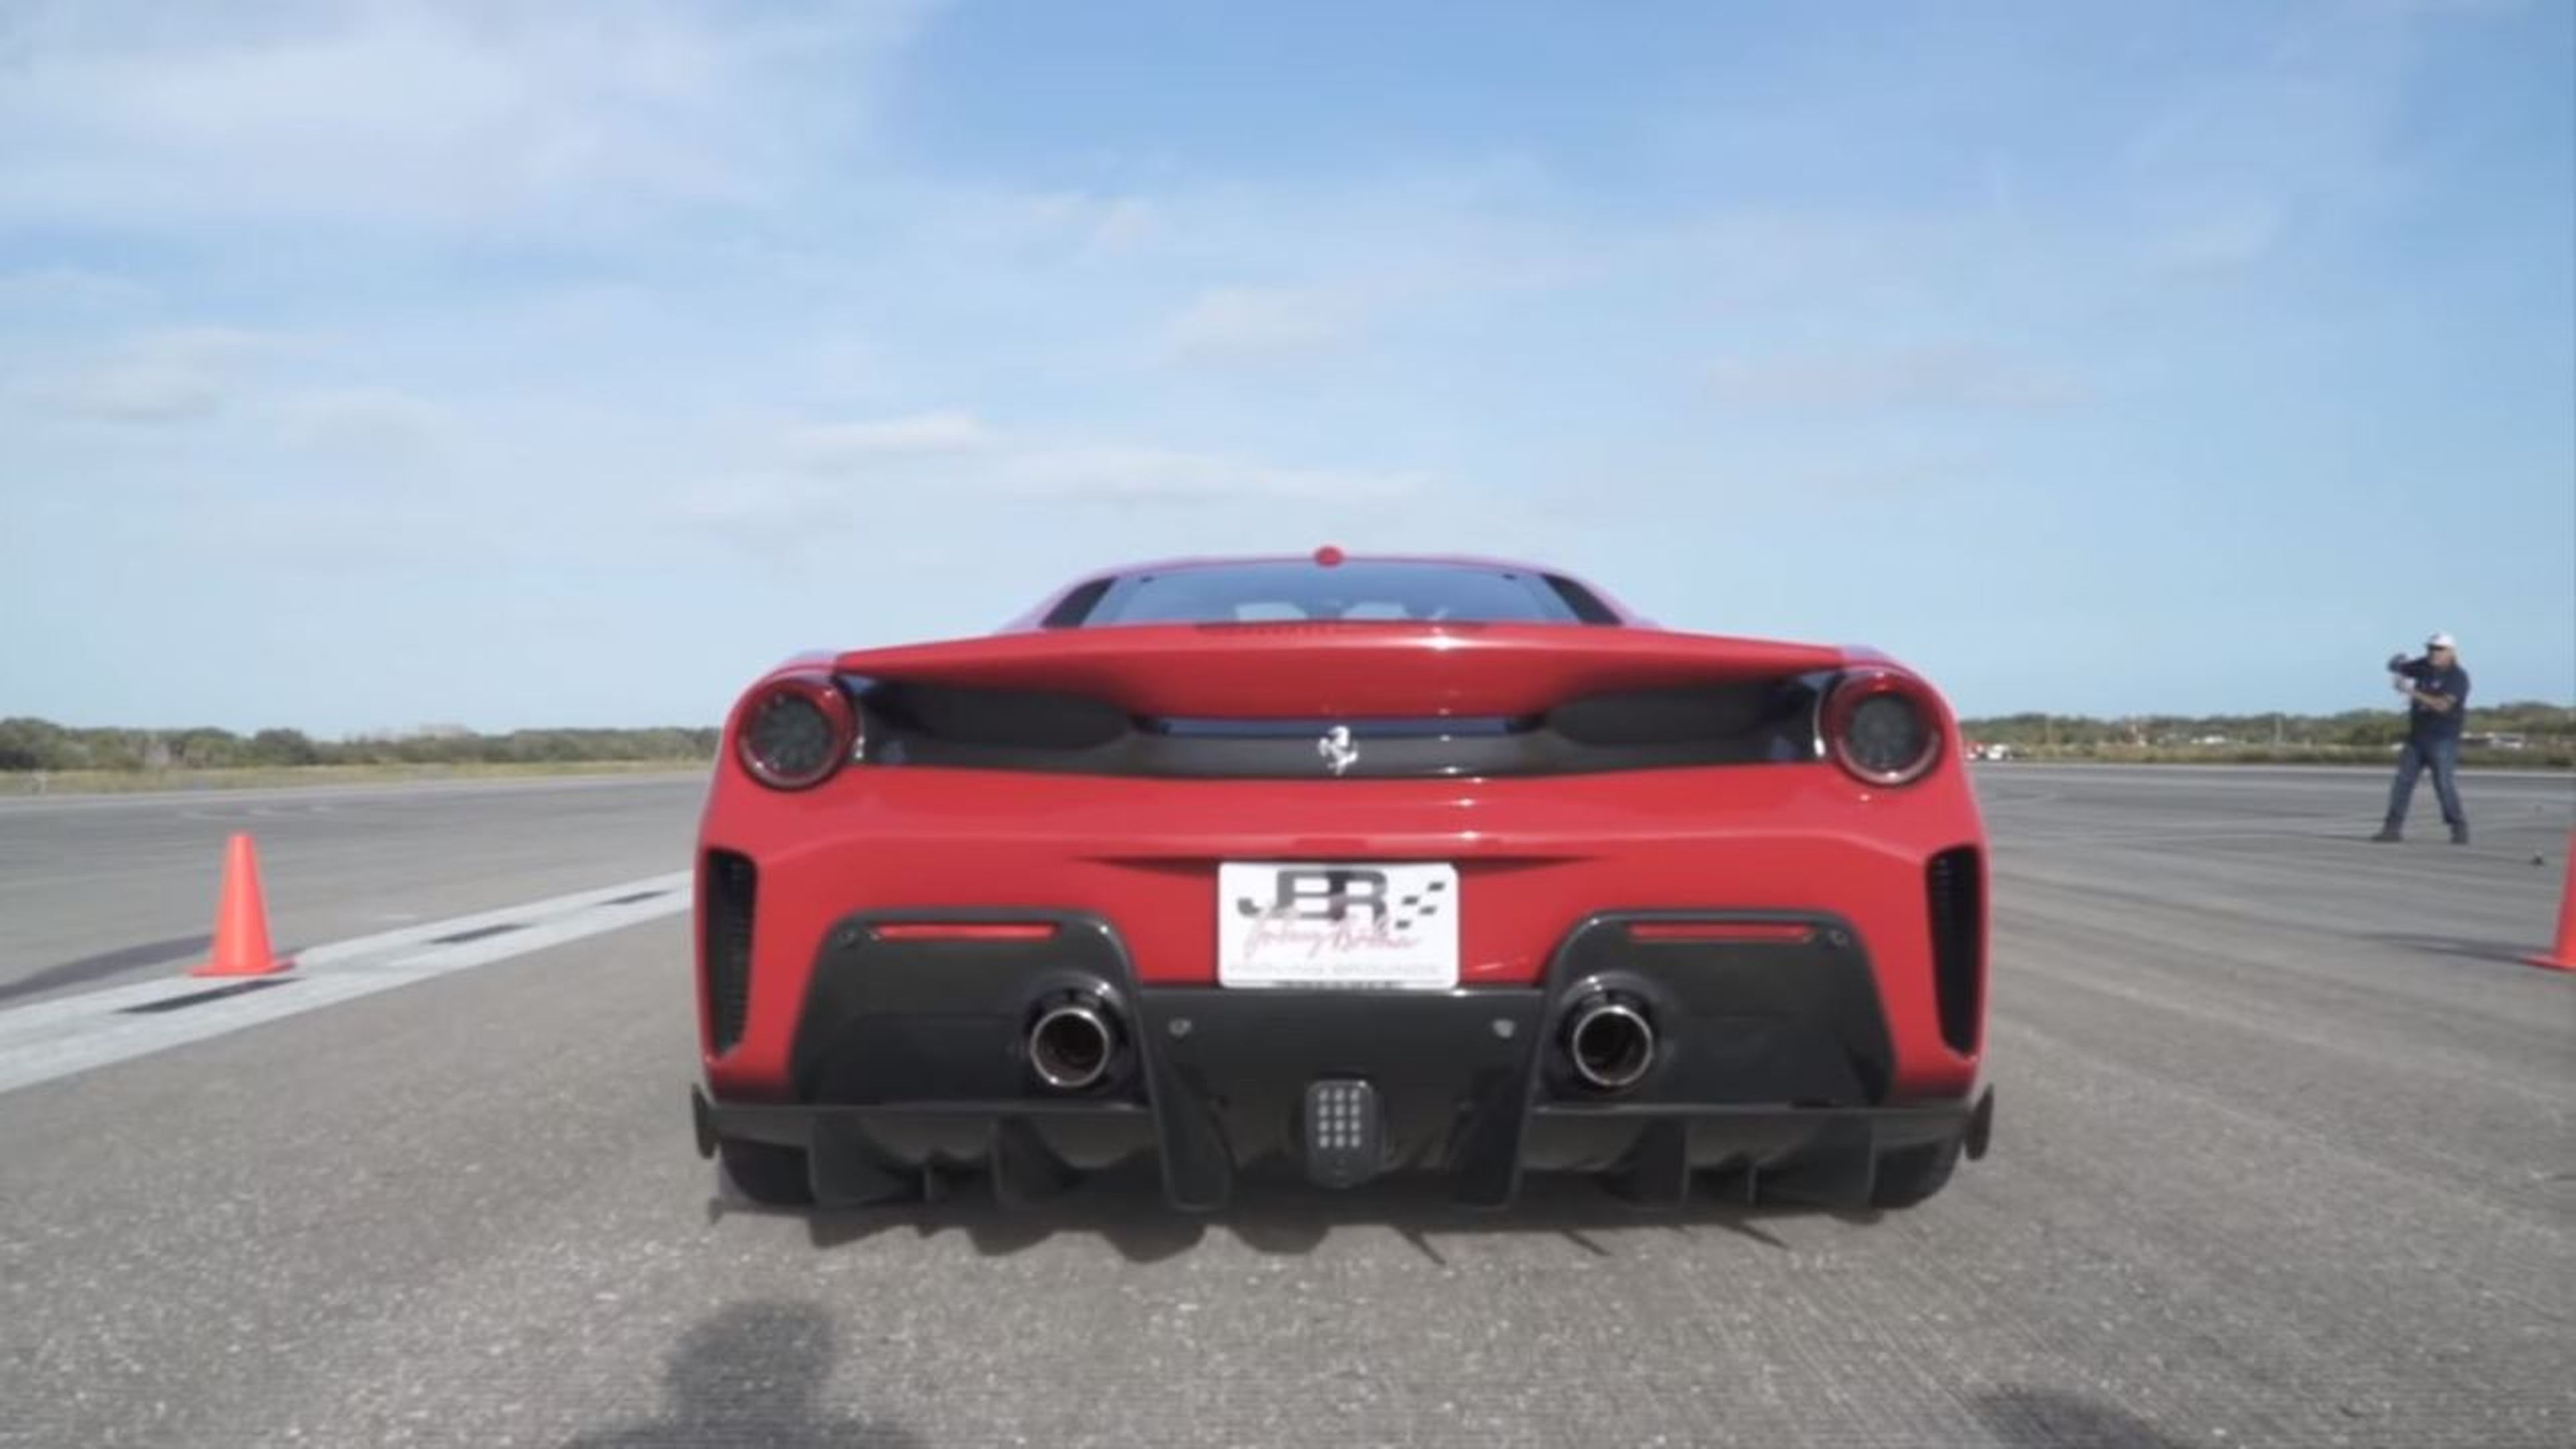 Ferrari 488 Pista velocidad maxima